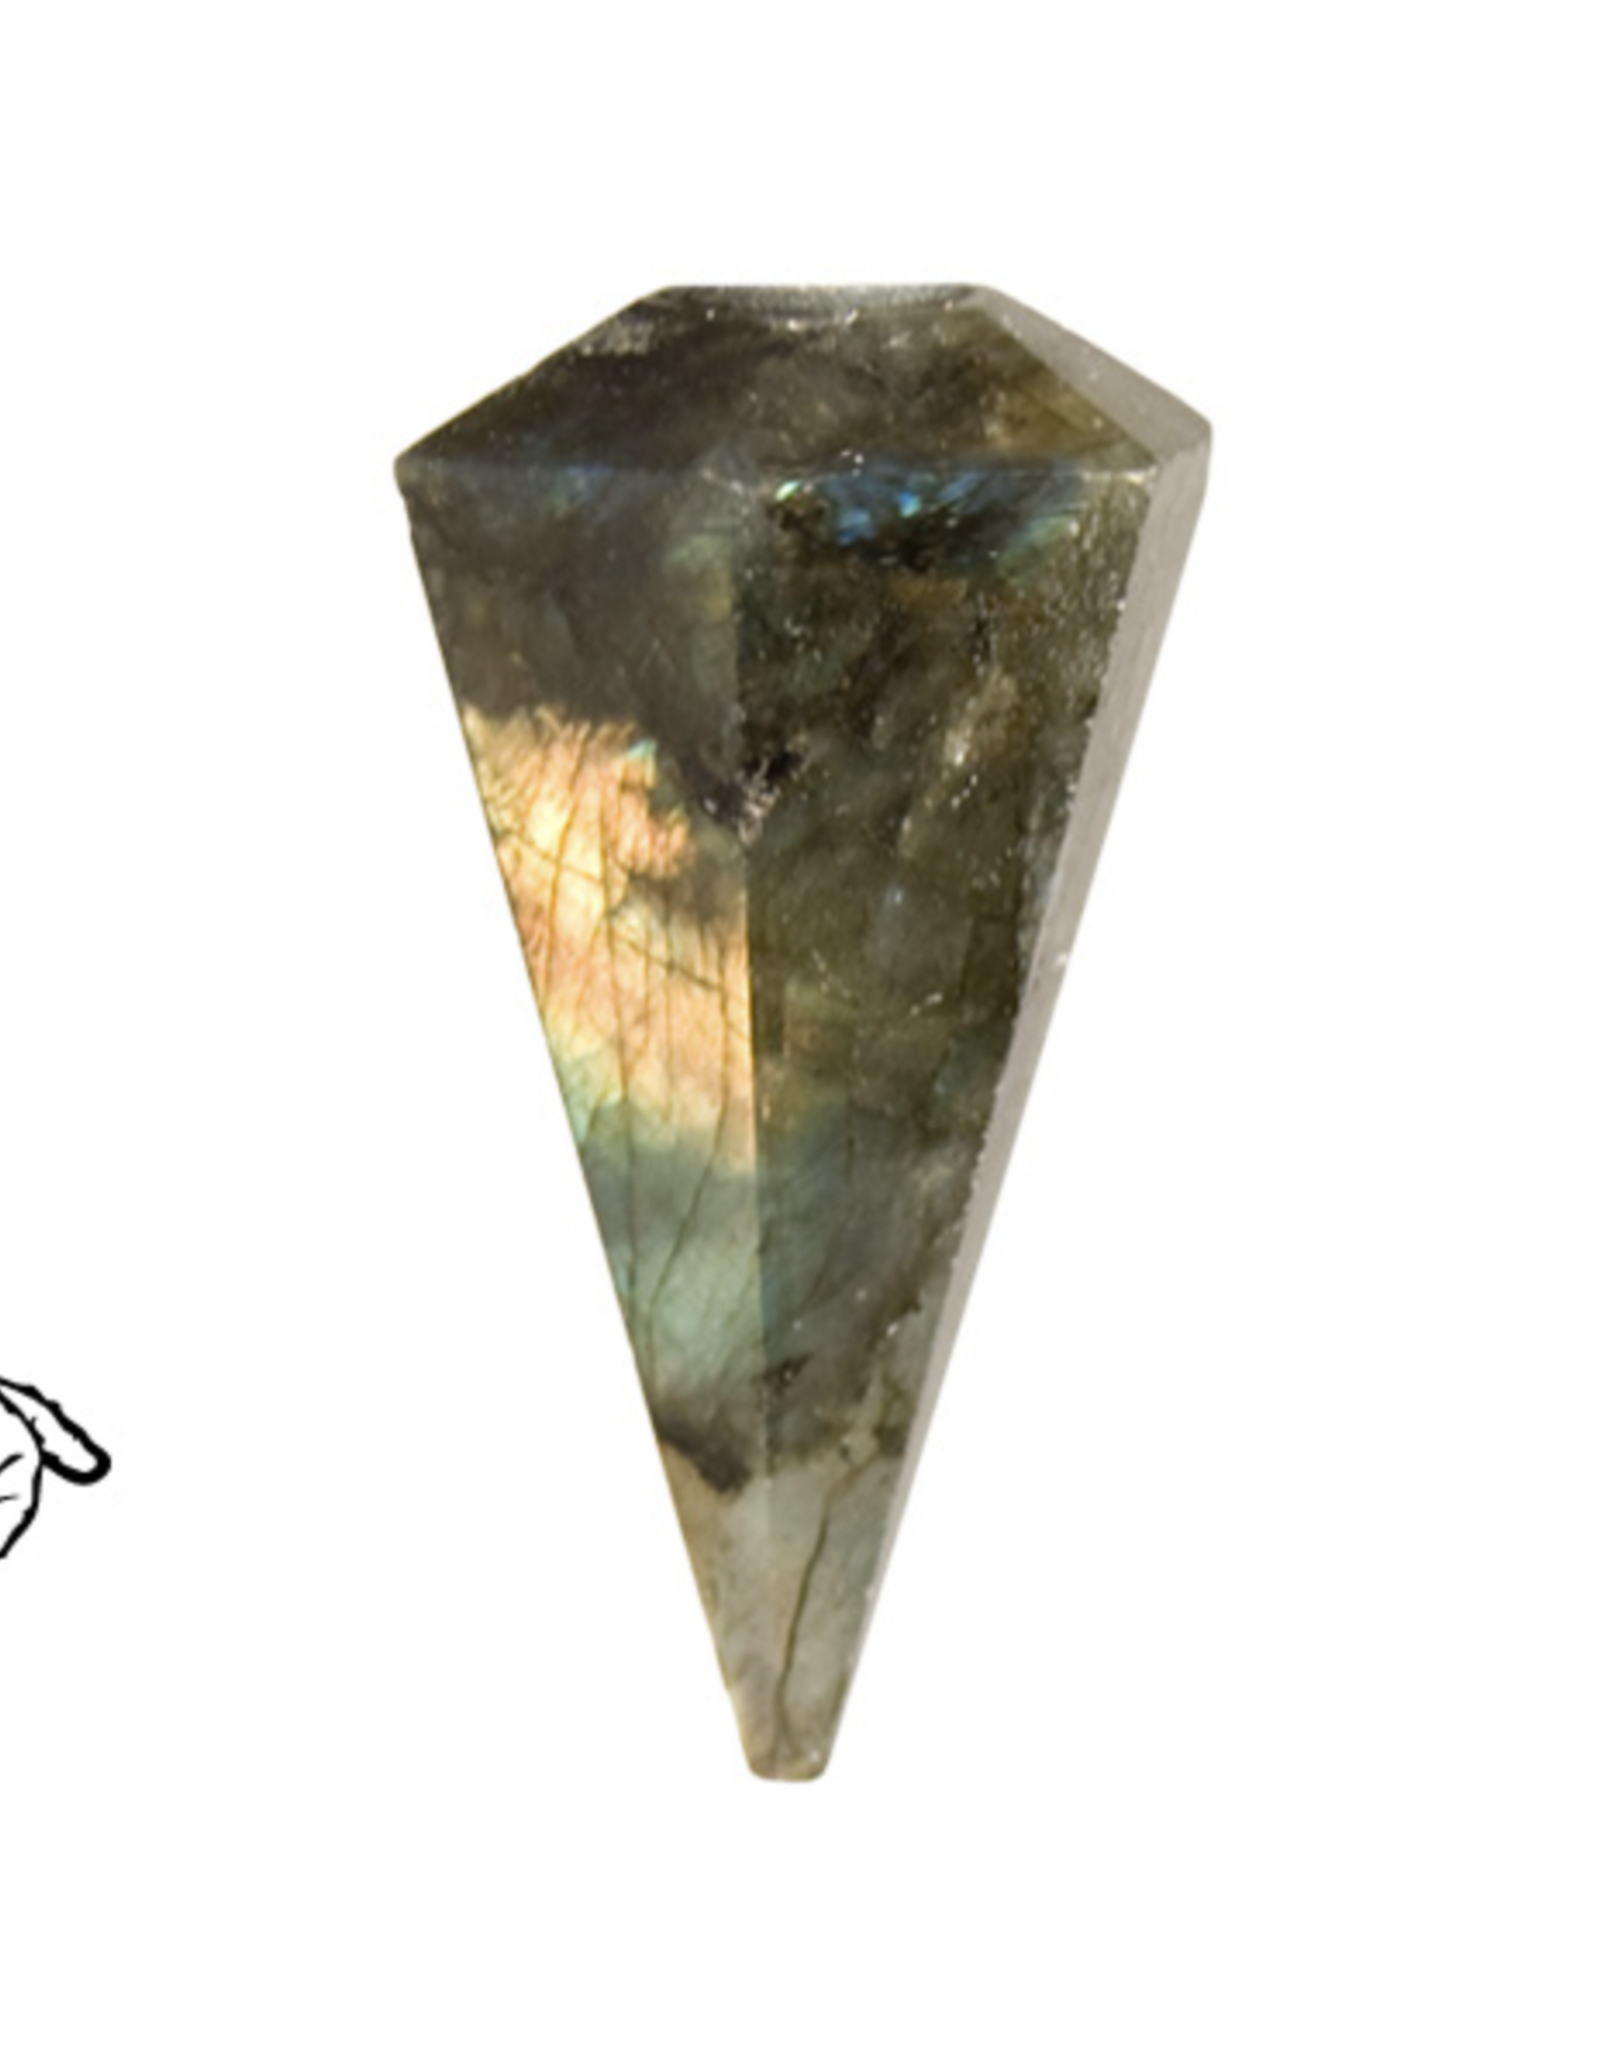 Faceted Pendulum - Labradorite